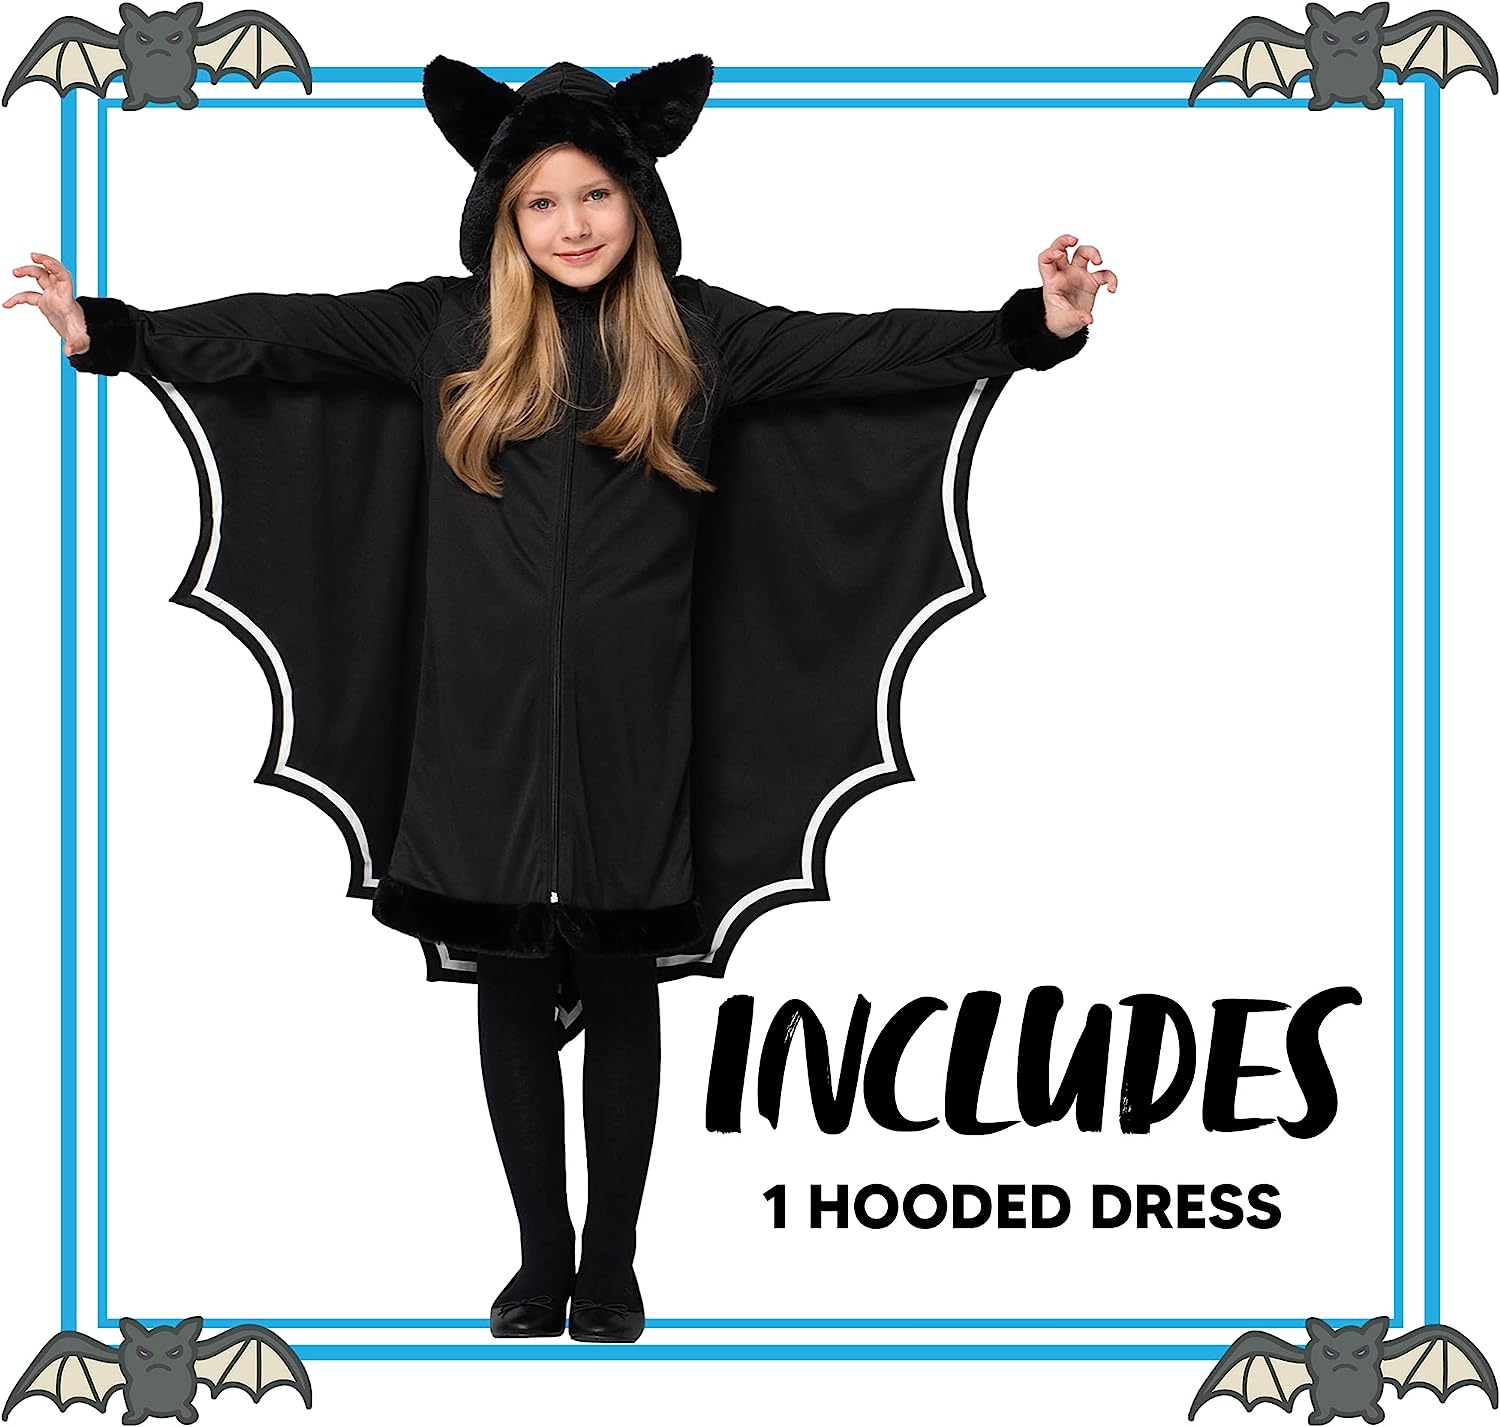 black bat costume